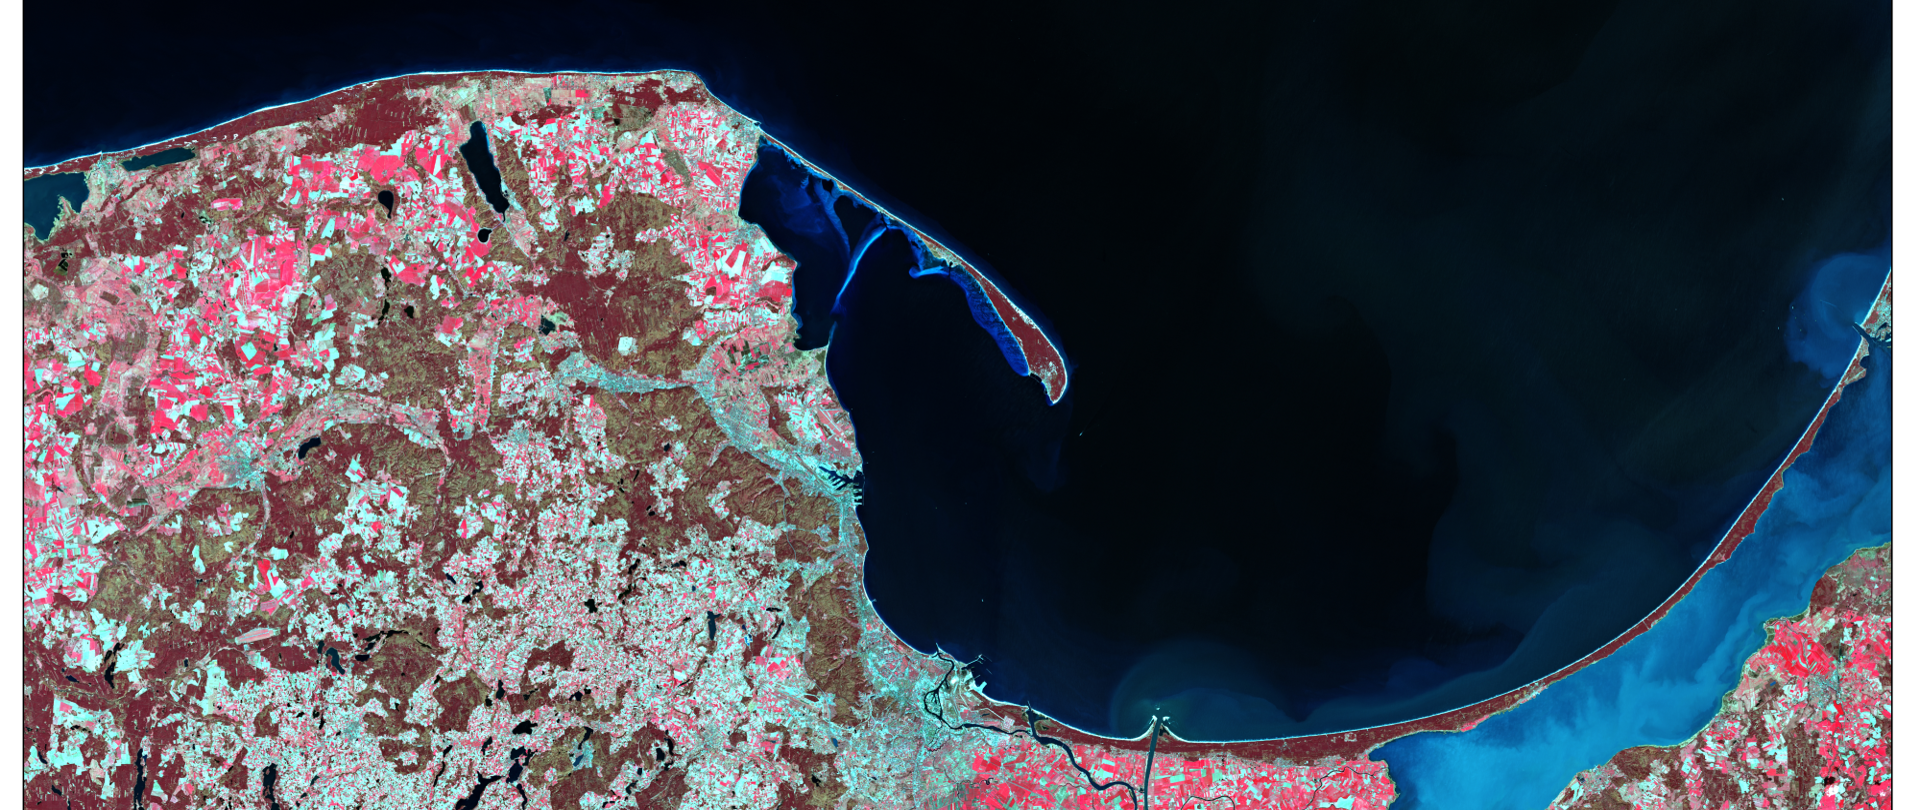 Zdjęcie satelitarne pokazujące polskie wybrzeże